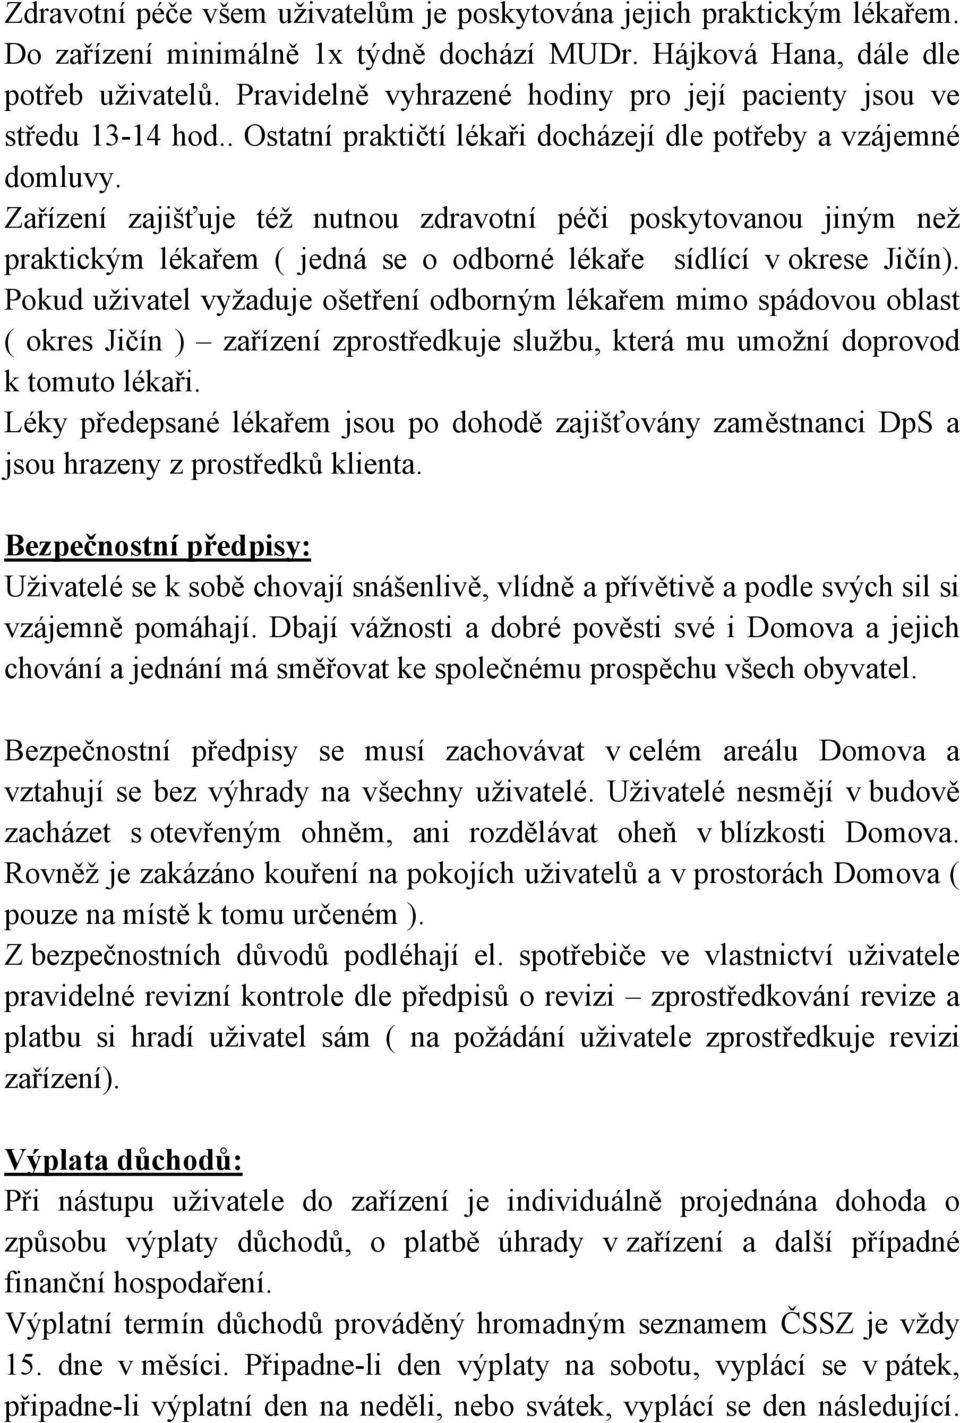 Zařízení zajišťuje též nutnou zdravotní péči poskytovanou jiným než praktickým lékařem ( jedná se o odborné lékaře sídlící v okrese Jičín).